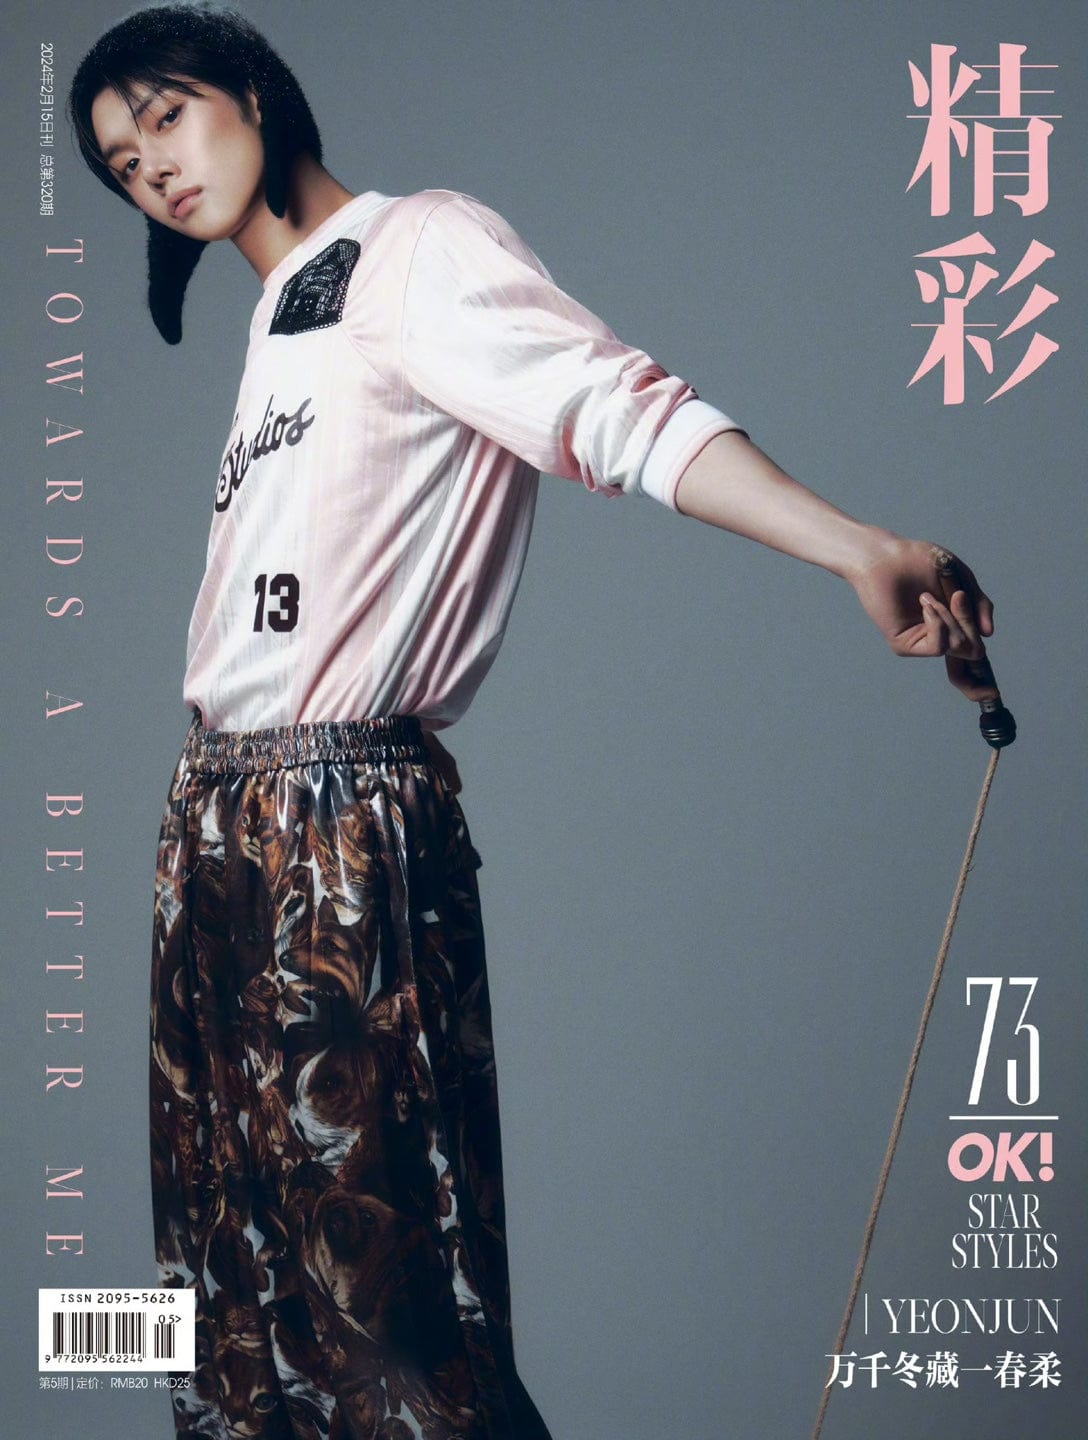 TXT (TOMORROW X TOGETHER) Magazine B YEONJUN for 精彩OK magazine